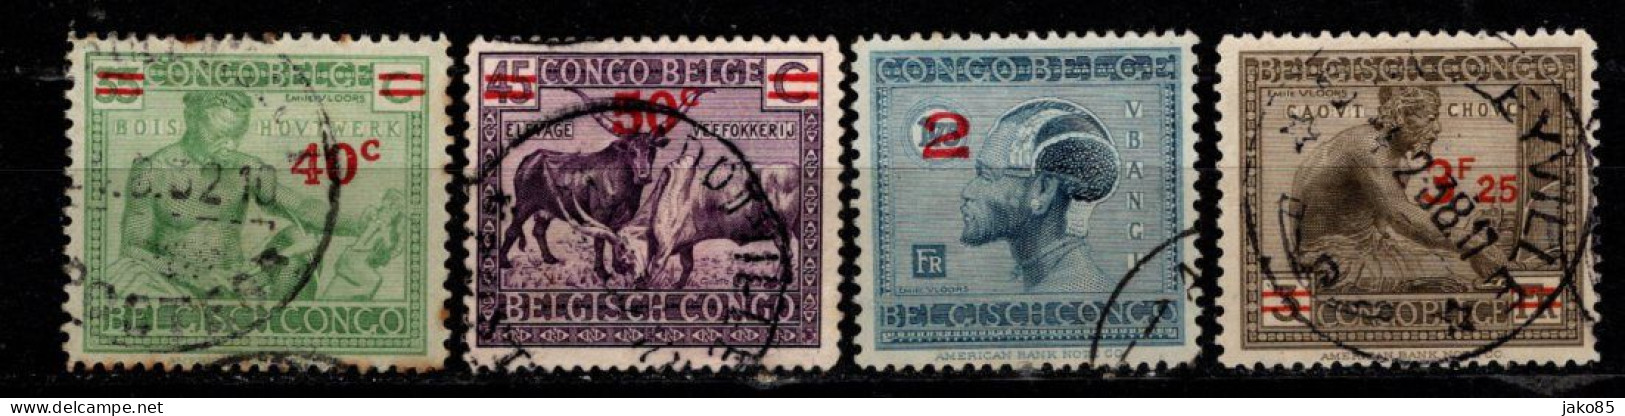 - CONGO BELGE - 1931 / 32 - YT N° 159 / 161A - Oblitérés - Surchargés - Série Complète - Unused Stamps